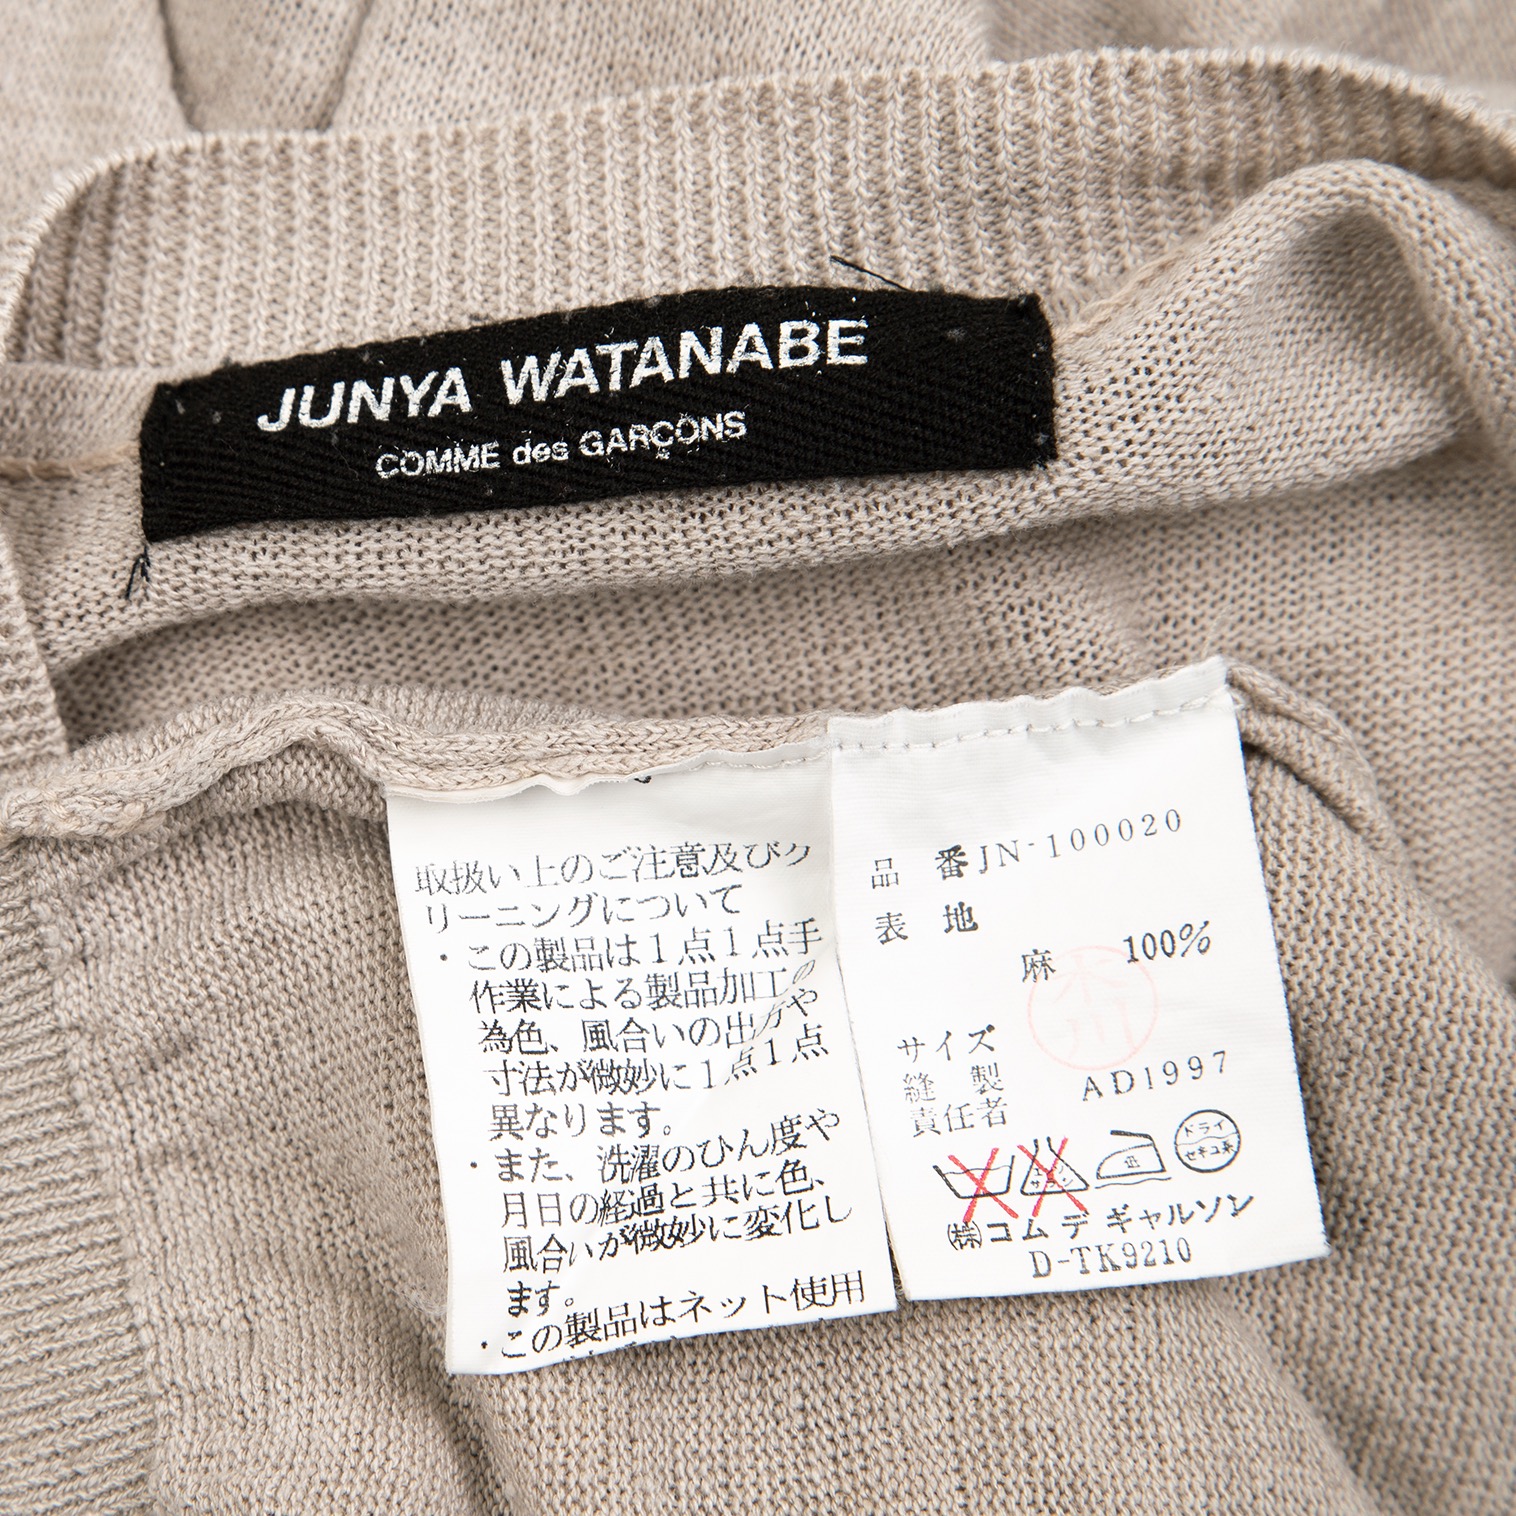 JUNYA WATANABE(ジュンヤワタナベ)ワンピースサイズ:S+wakandacleaning.ae